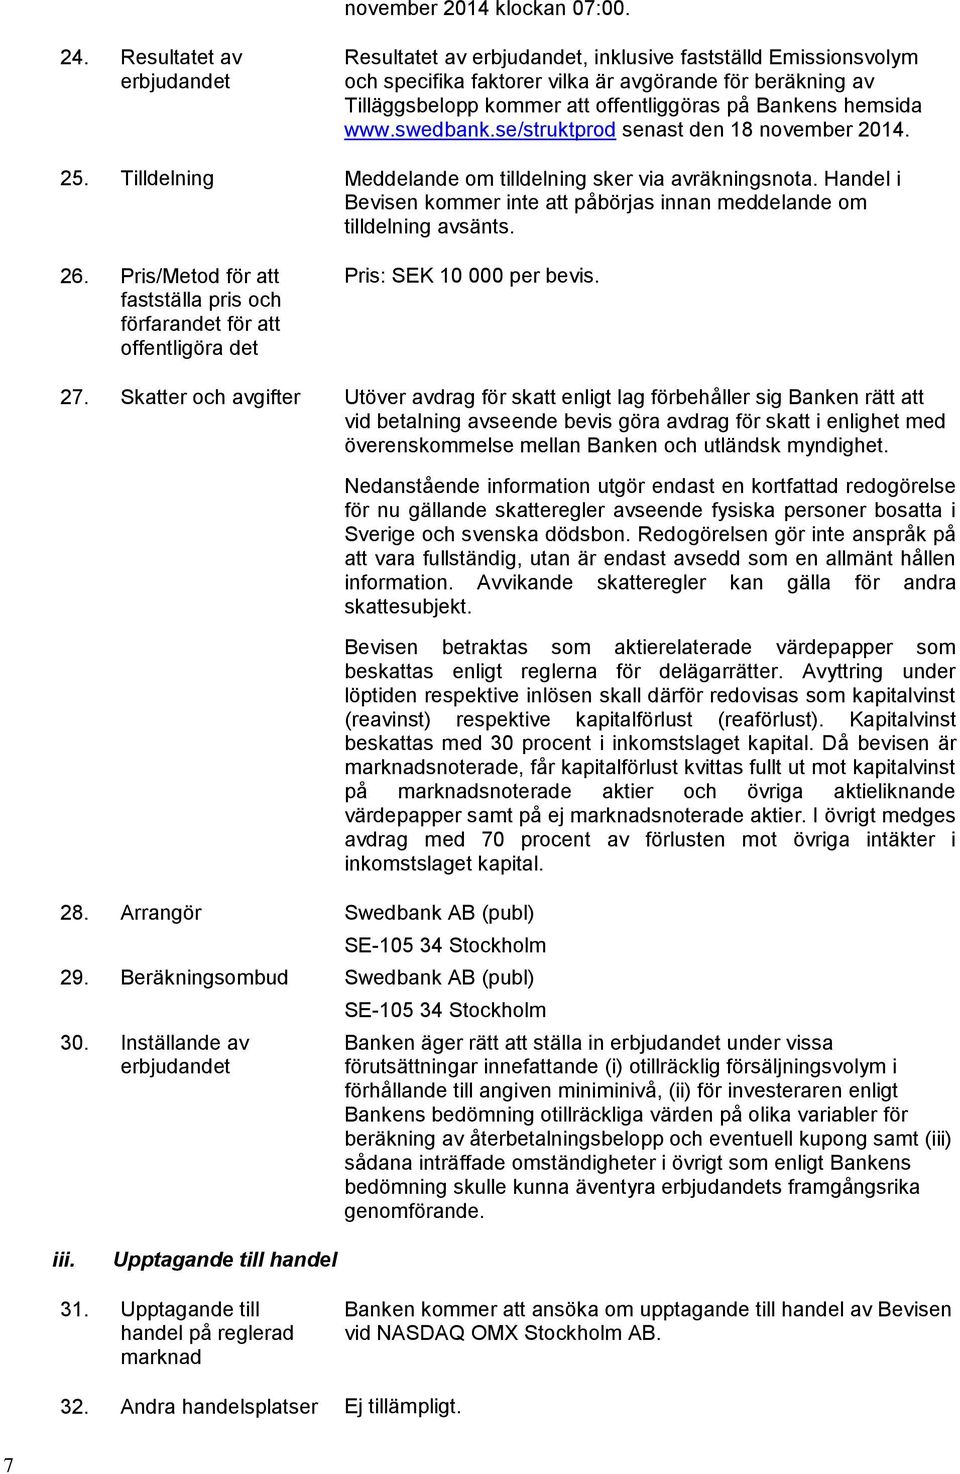 hemsida www.swedbank.se/struktprod senast den 18 november. 25. Tilldelning Meddelande om tilldelning sker via avräkningsnota.